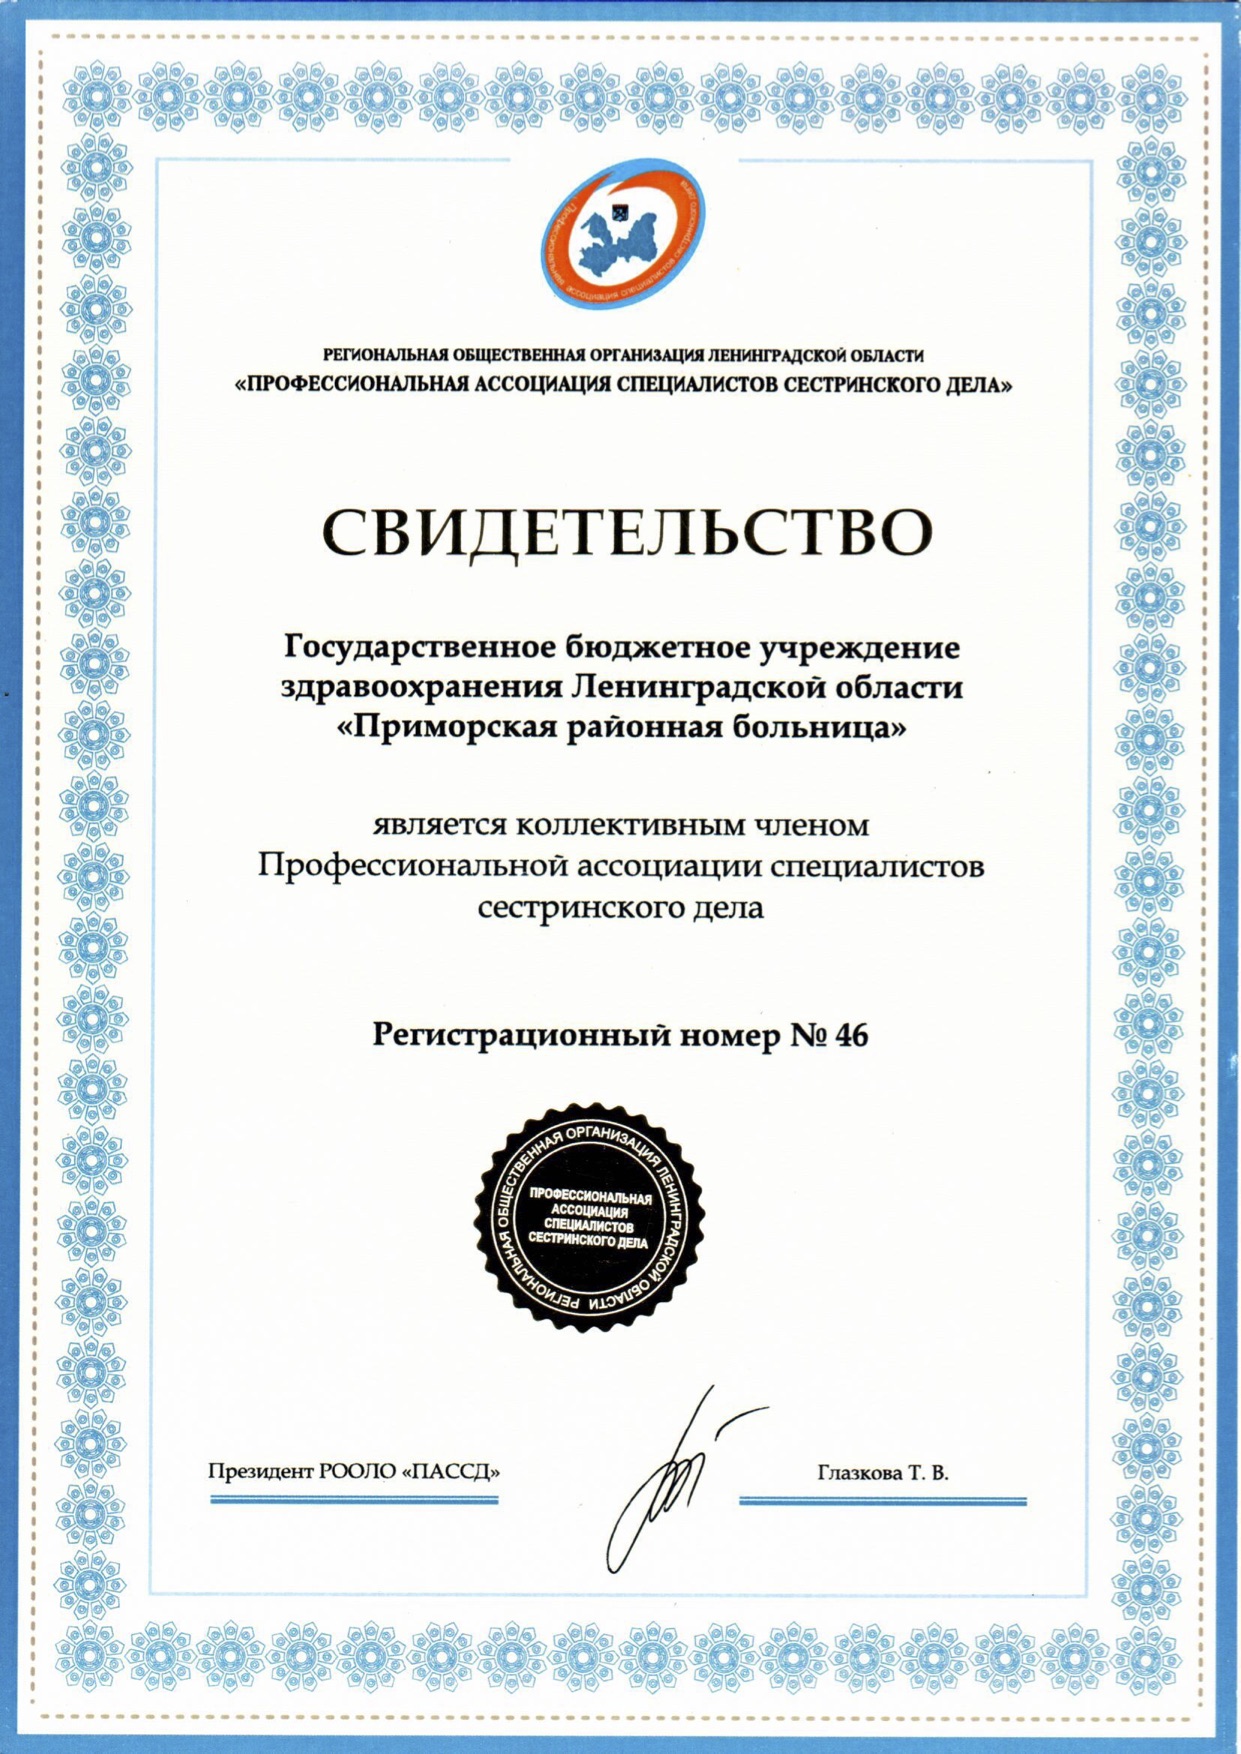 ГБУЗ ЛО "Приморская РБ": сертификат